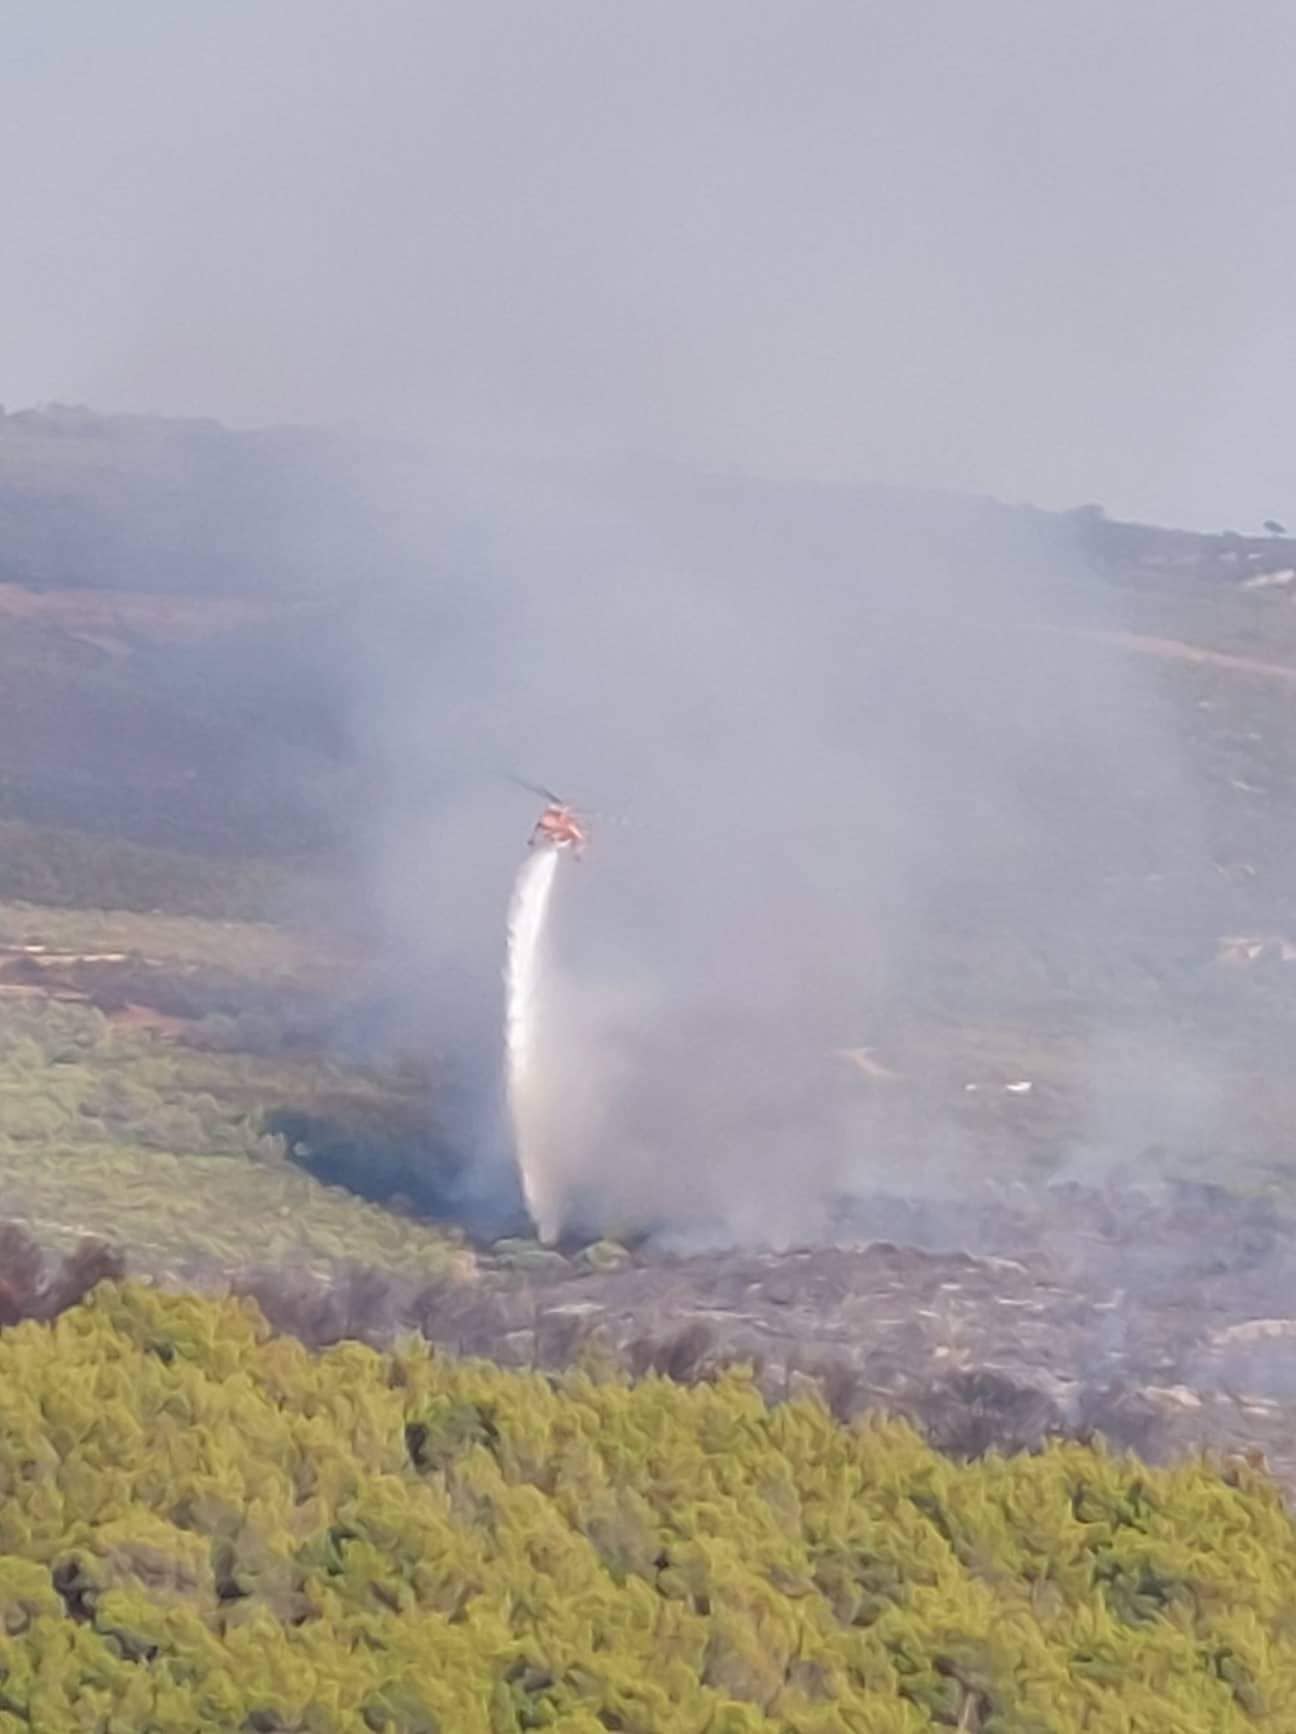 Ζάκυνθος: Μεγάλη φωτιά στο χωριό Καμπί – Ενισχύθηκαν οι δυνάμεις της πυροσβεστικής (video)